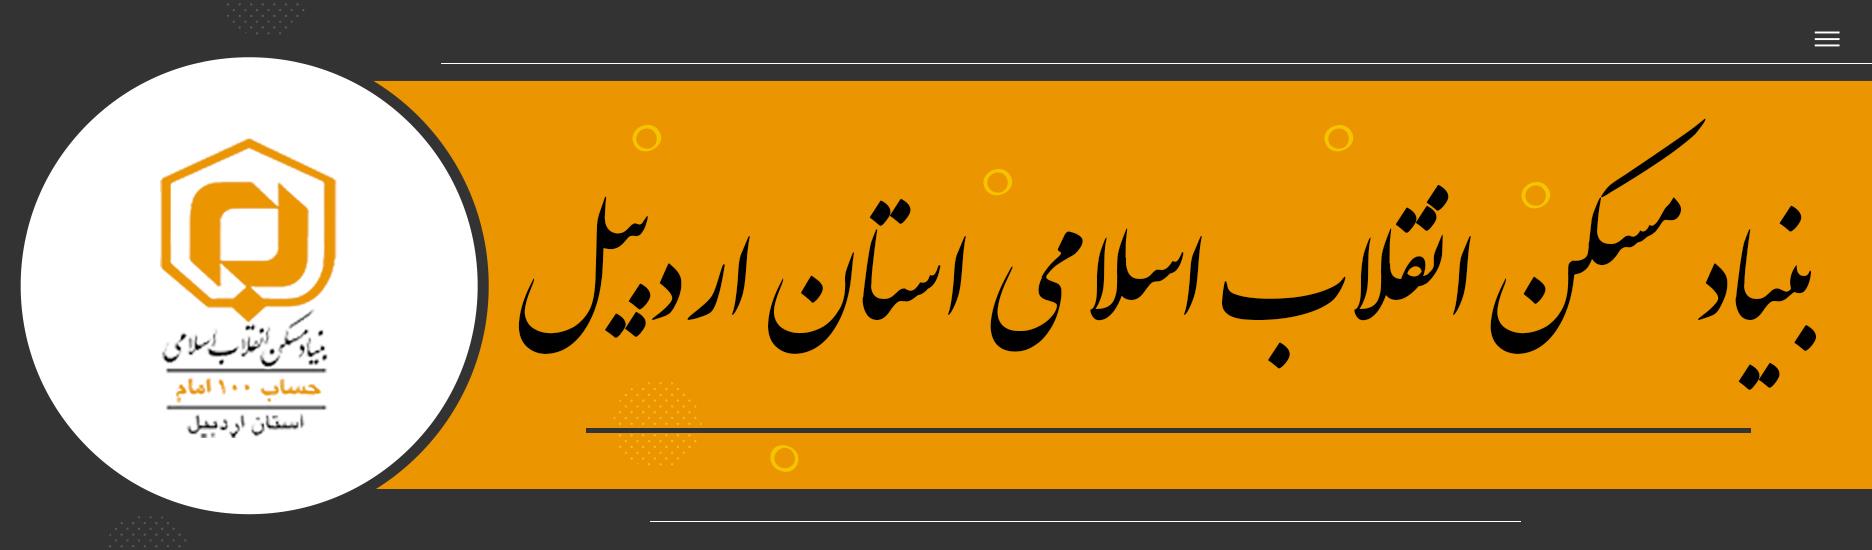 بنیاد مسکن انقلاب اسلامی استان اردبیل